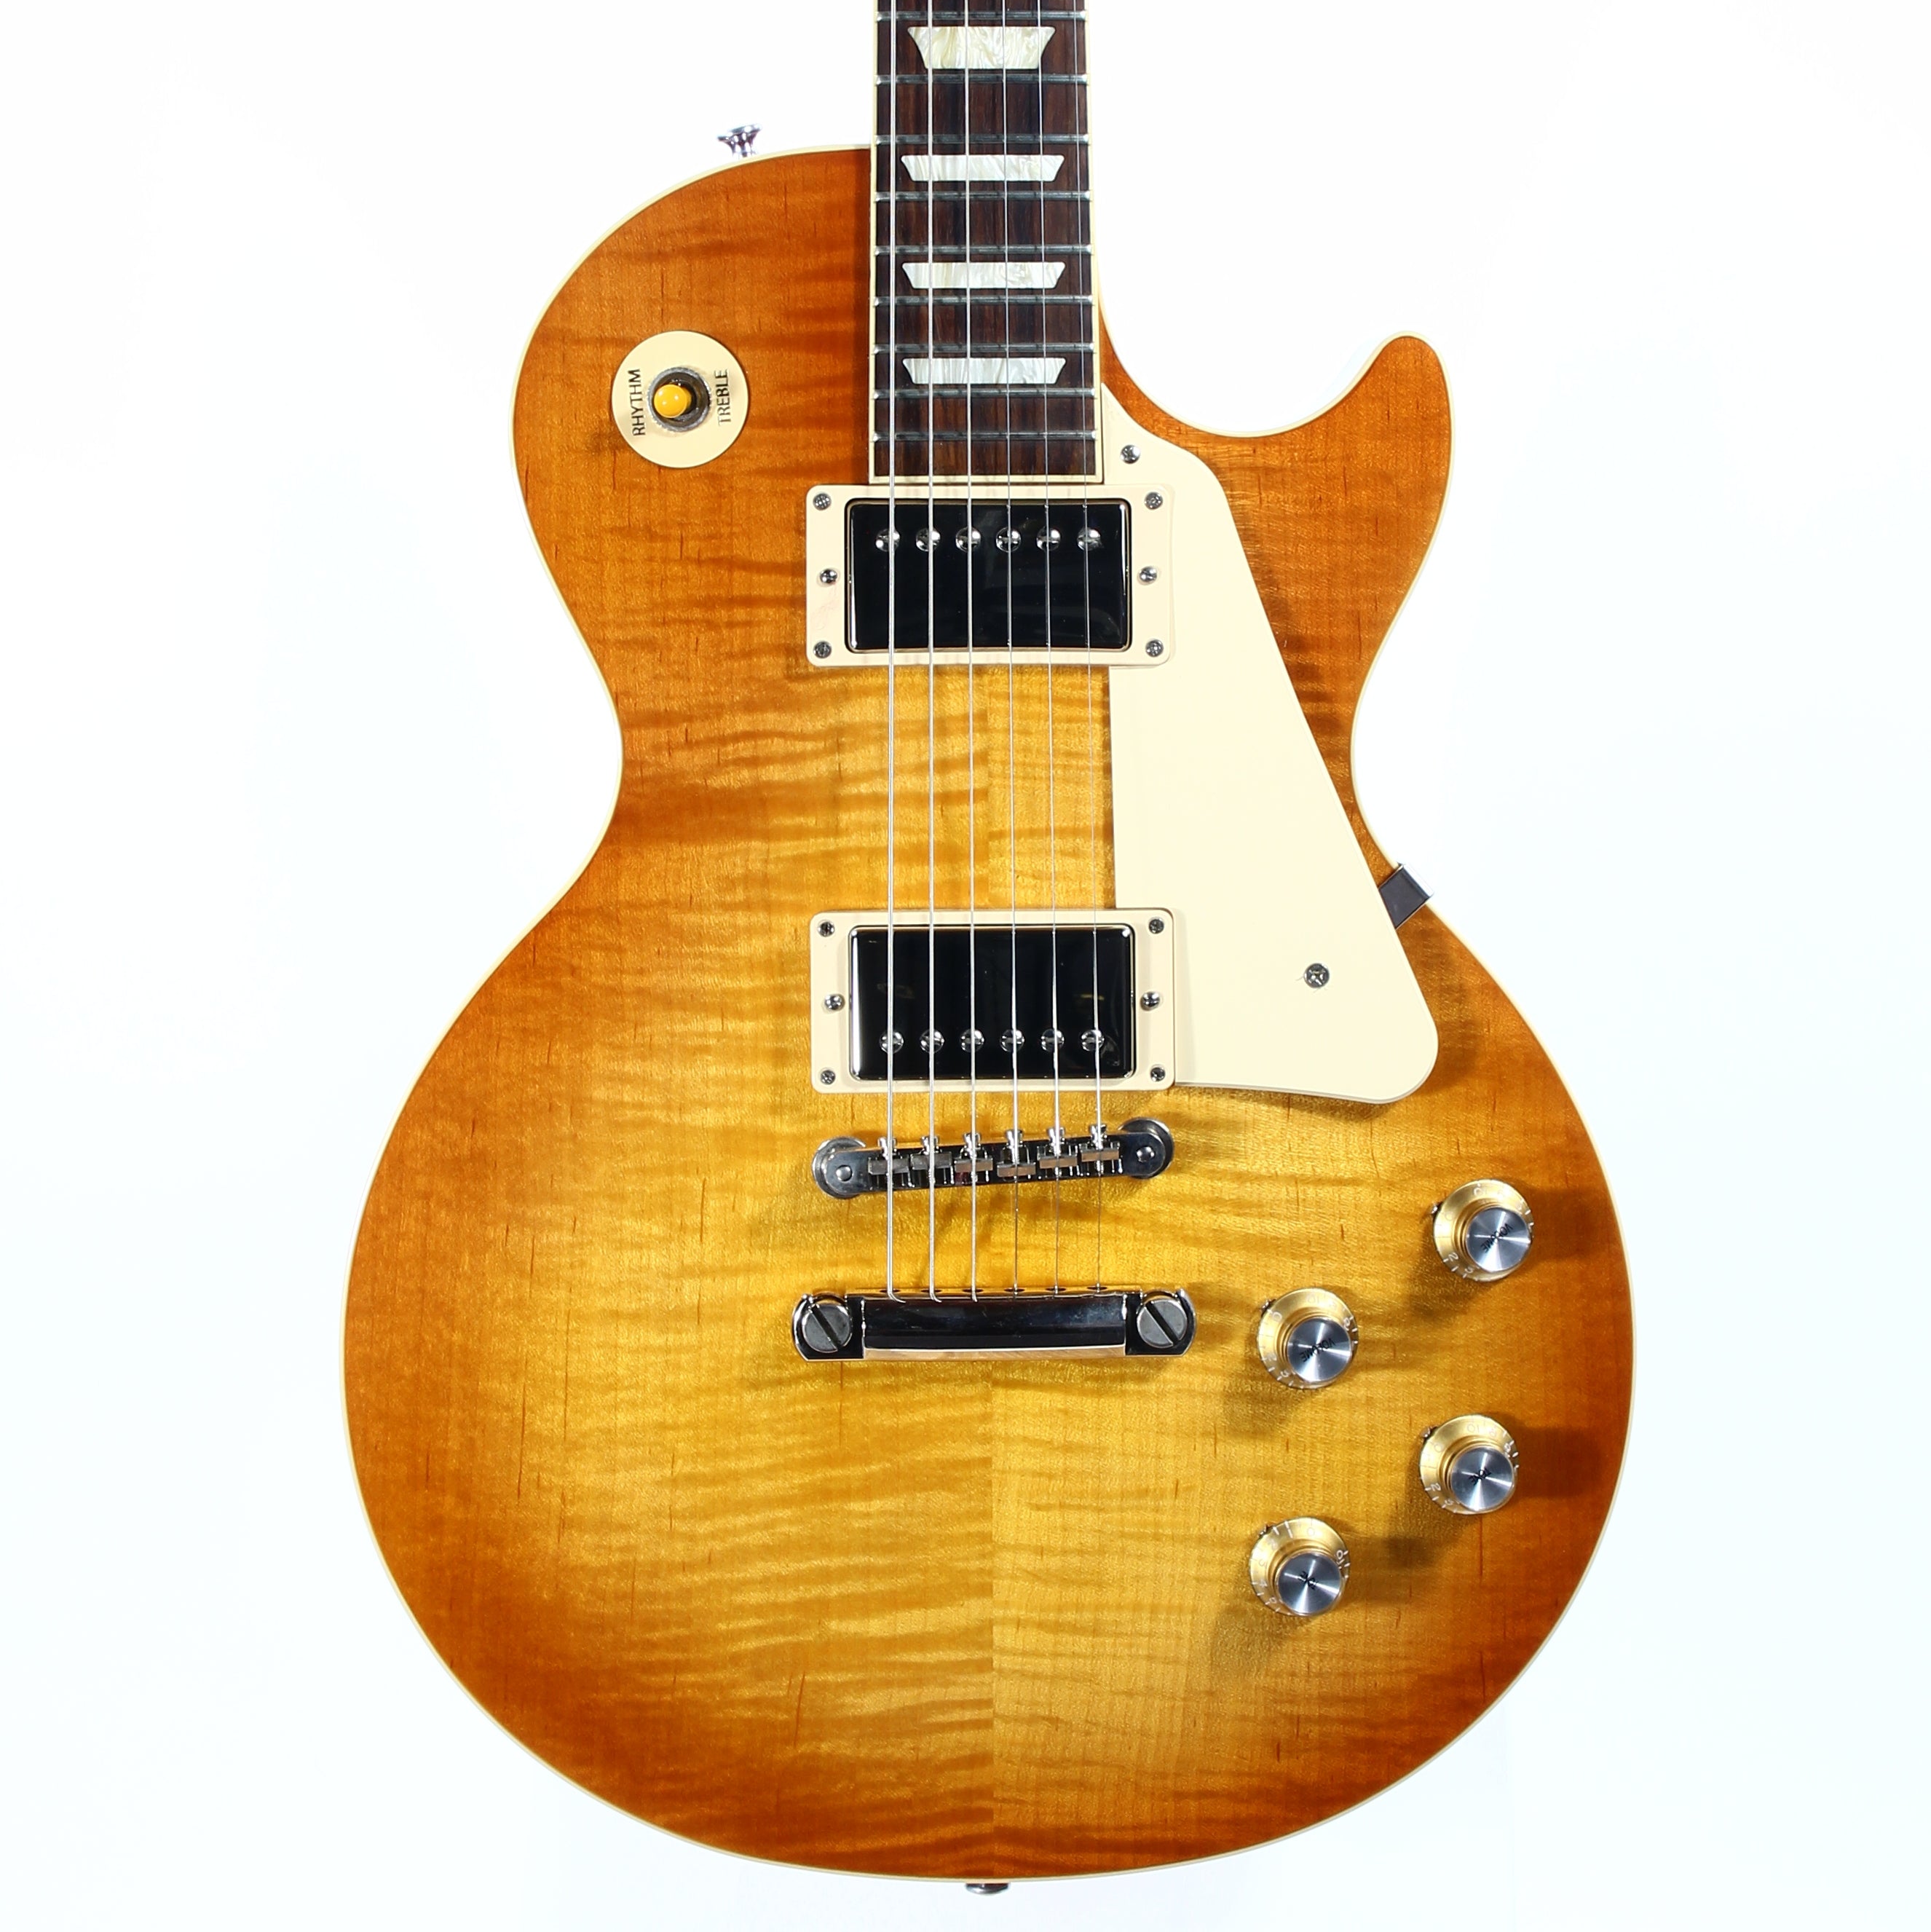 *SOLD*  2020 Gibson Les Paul Standard '60s Electric Guitar - Unburst, Flametop, Sunburst, 1960's, 60's, Slim Neck